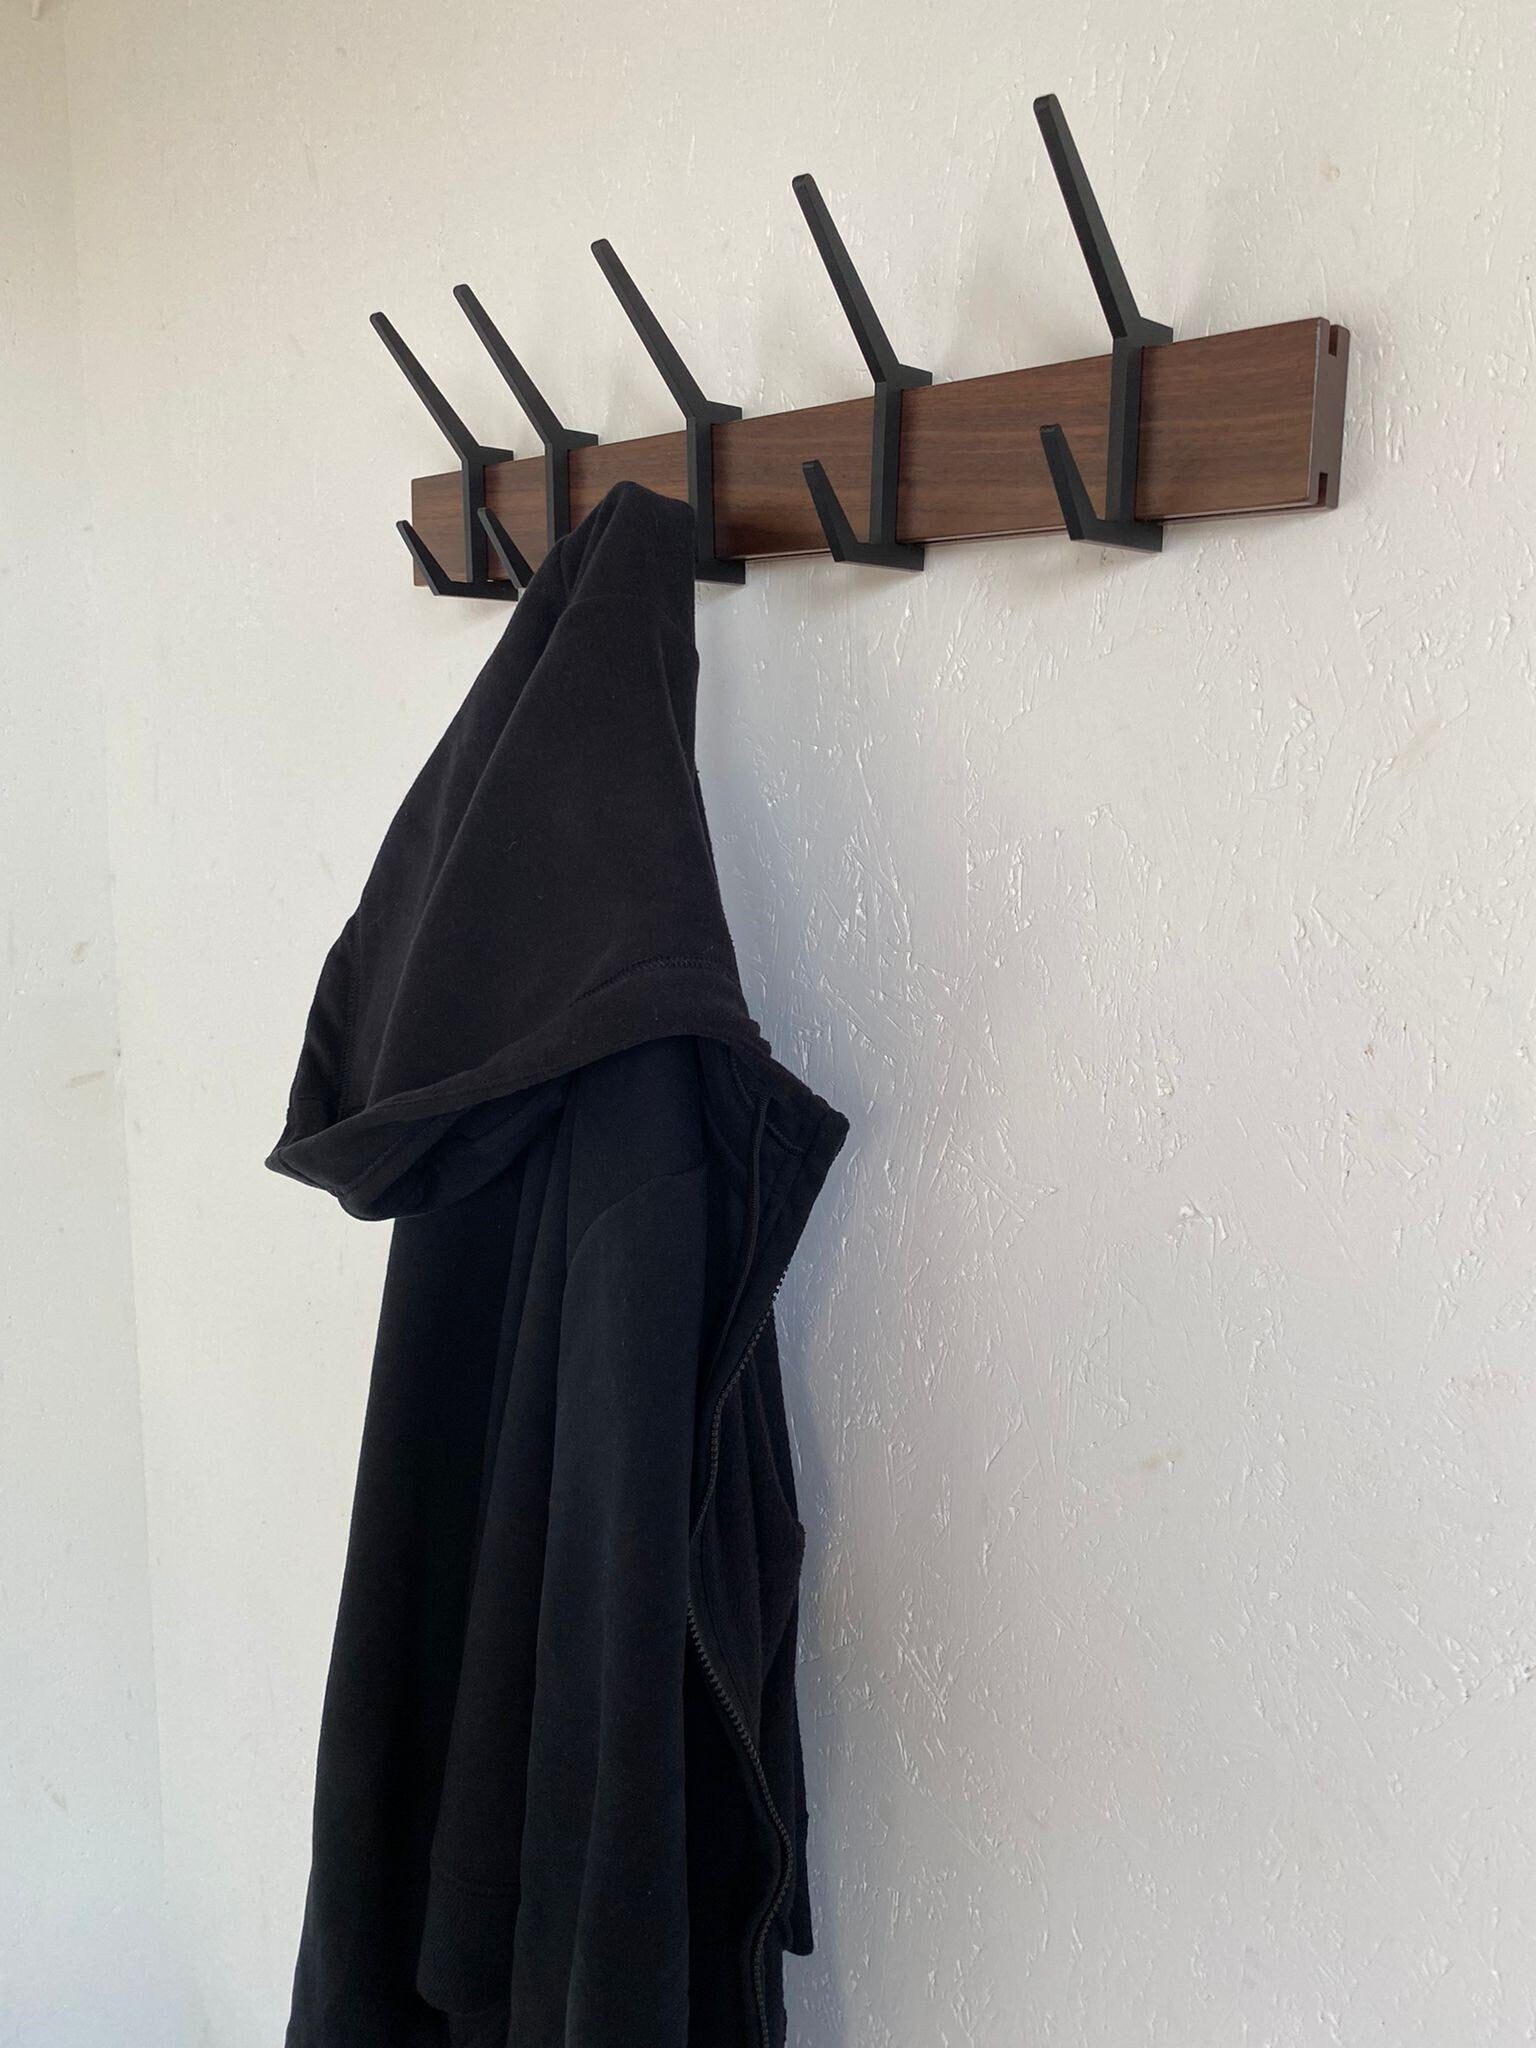 Wooden COAT & HAT rack, Wooden rack with removable hooks, Stylish walnut wood rack with sliding hooks, Entryway coat hooks/ WALNUT